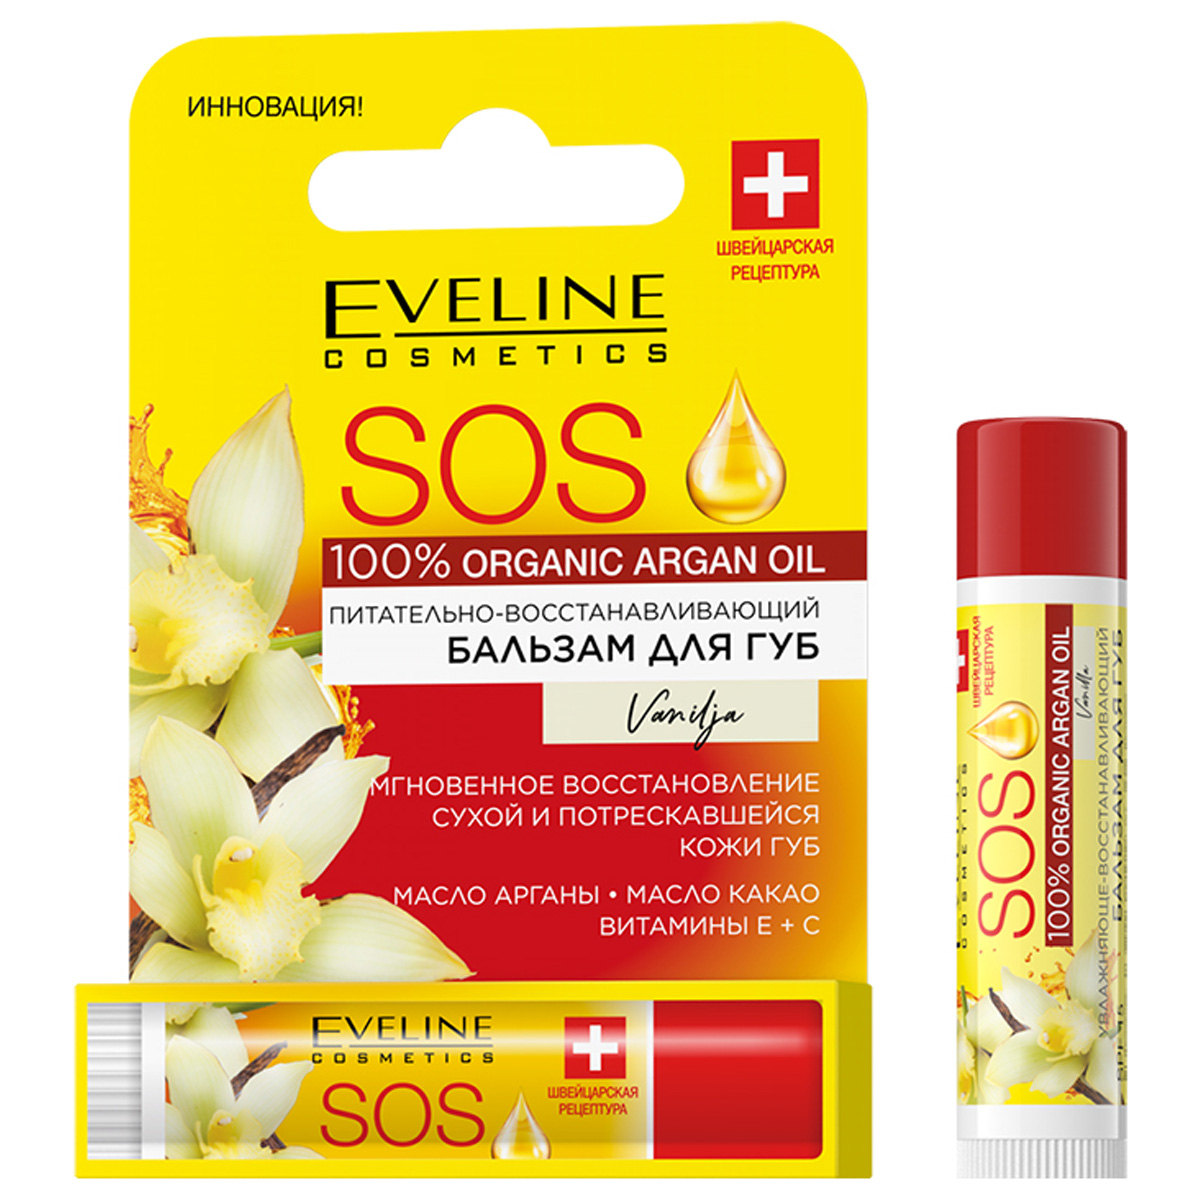 Бальзам для губ Eveline Cosmetics с аргановым маслом Vanilla 4,5г eveline бальзам для губ sos argan oil ваниль spf 15 питательно восстанавливающий 4 5